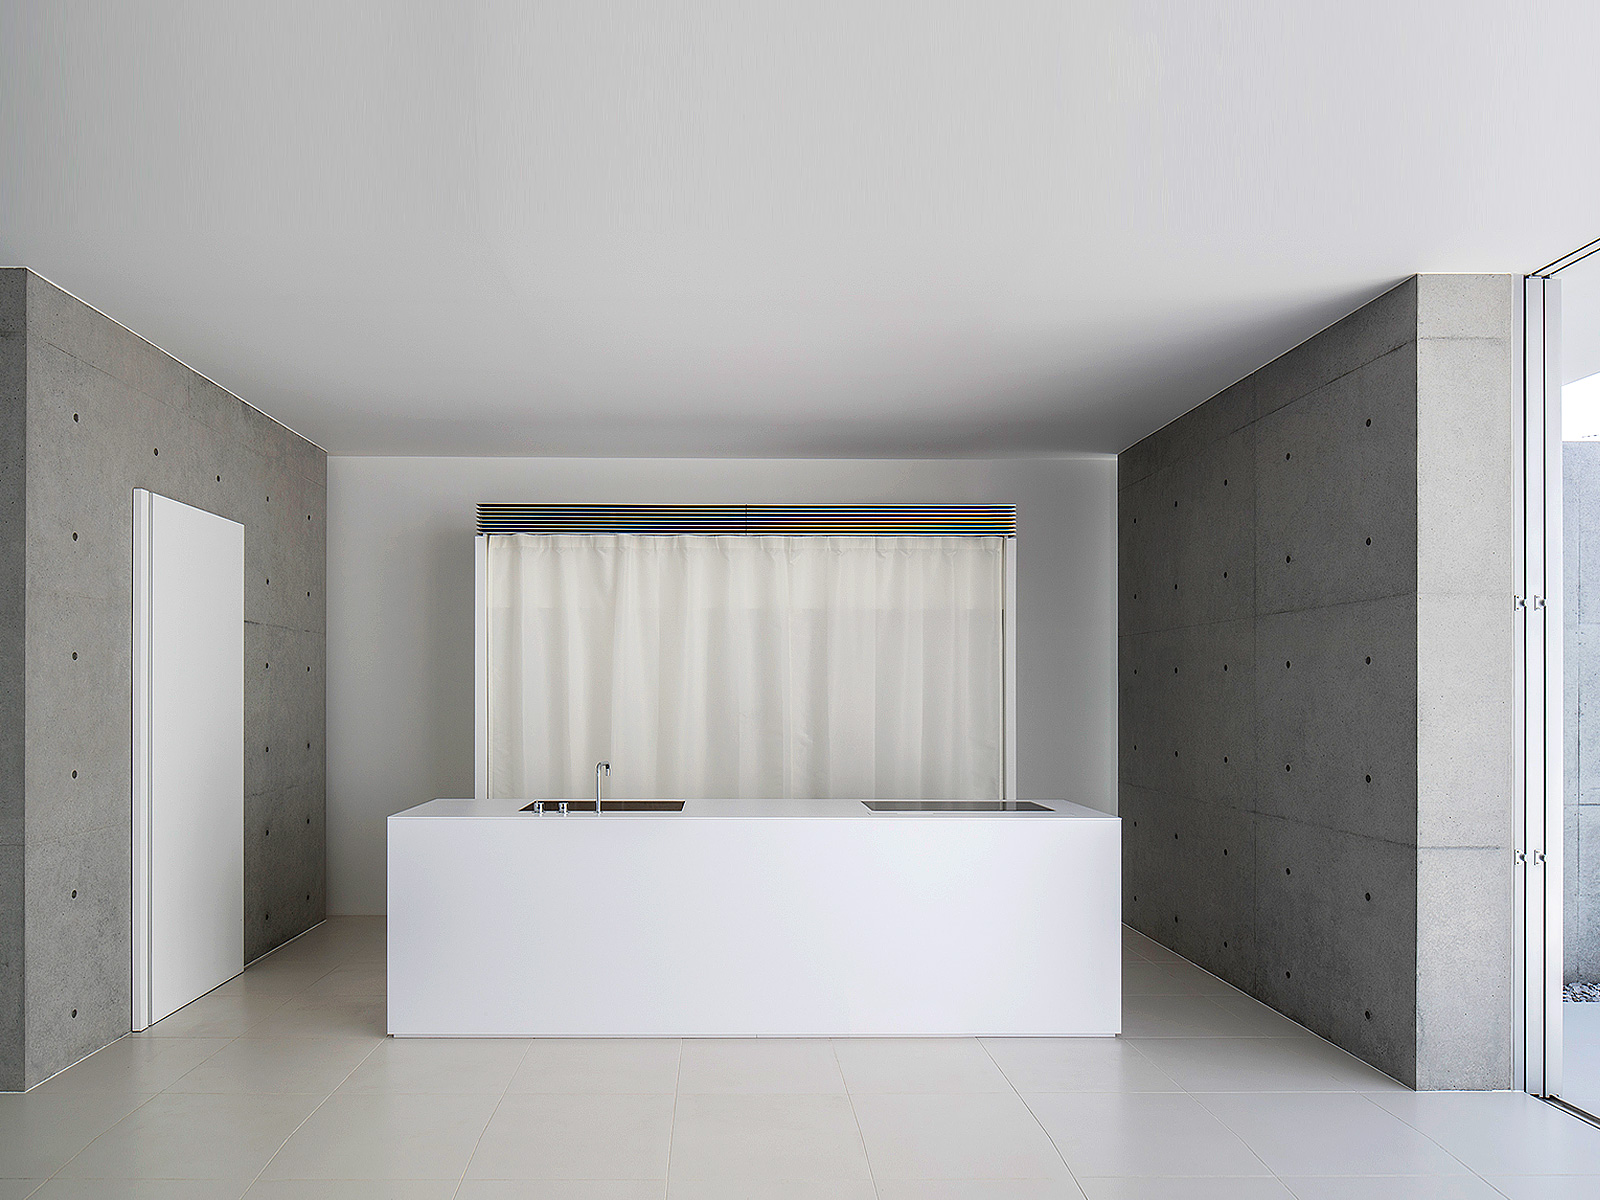 FU-House by Kubota Architect Atelier